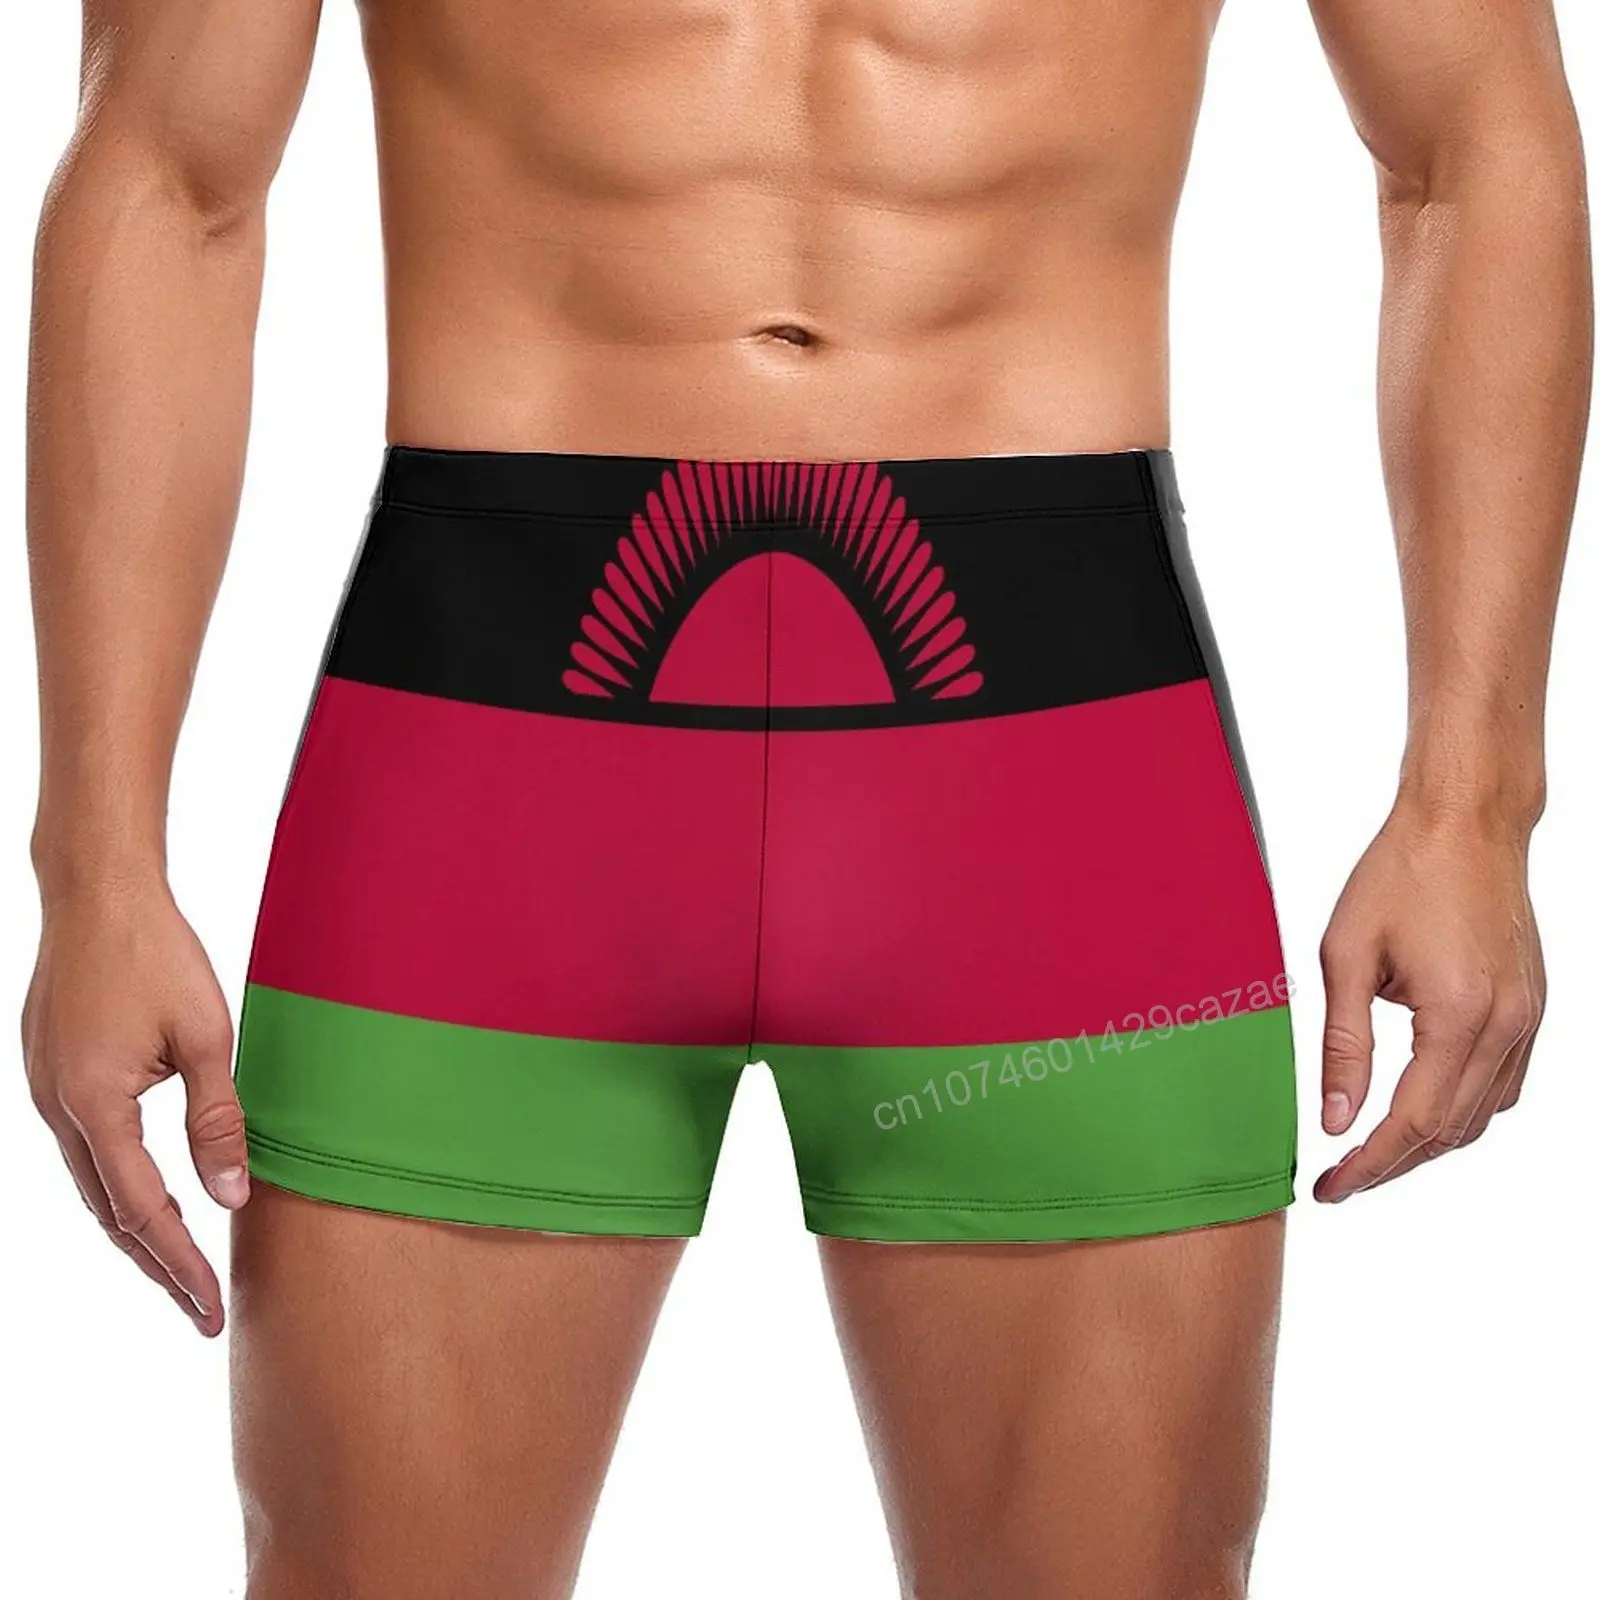 

Плавки мужские с флагом Малави, быстросохнущие шорты для плавания, пляжные короткие, летний подарок